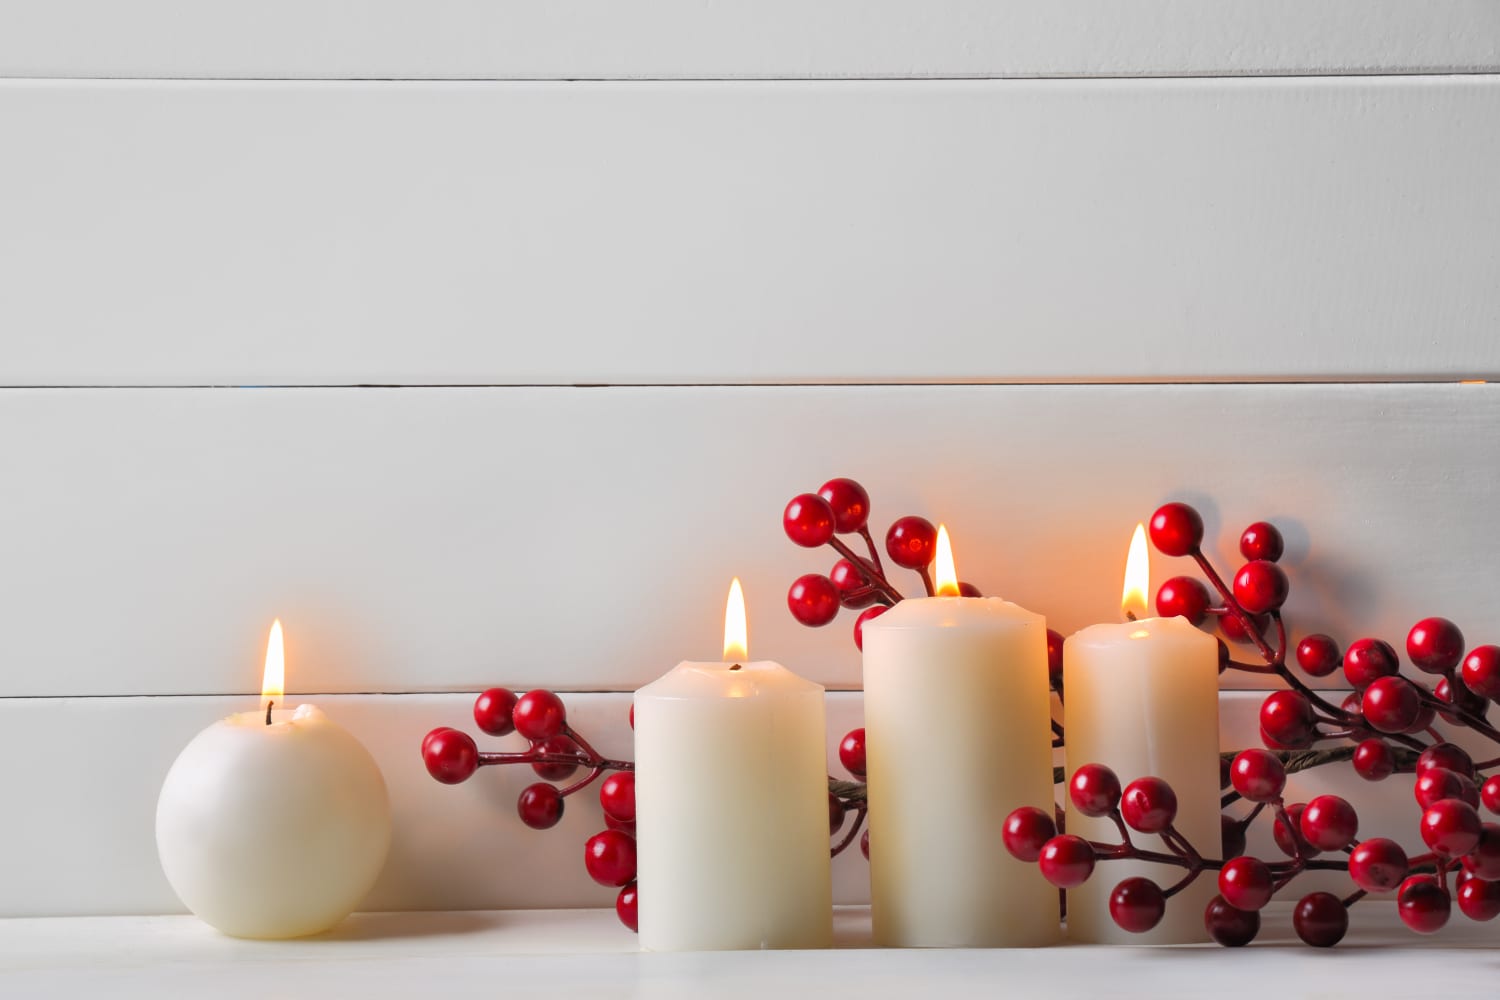 Milijoni božičnih sveč se ta mesec odpravijo naravnost na odlagališče